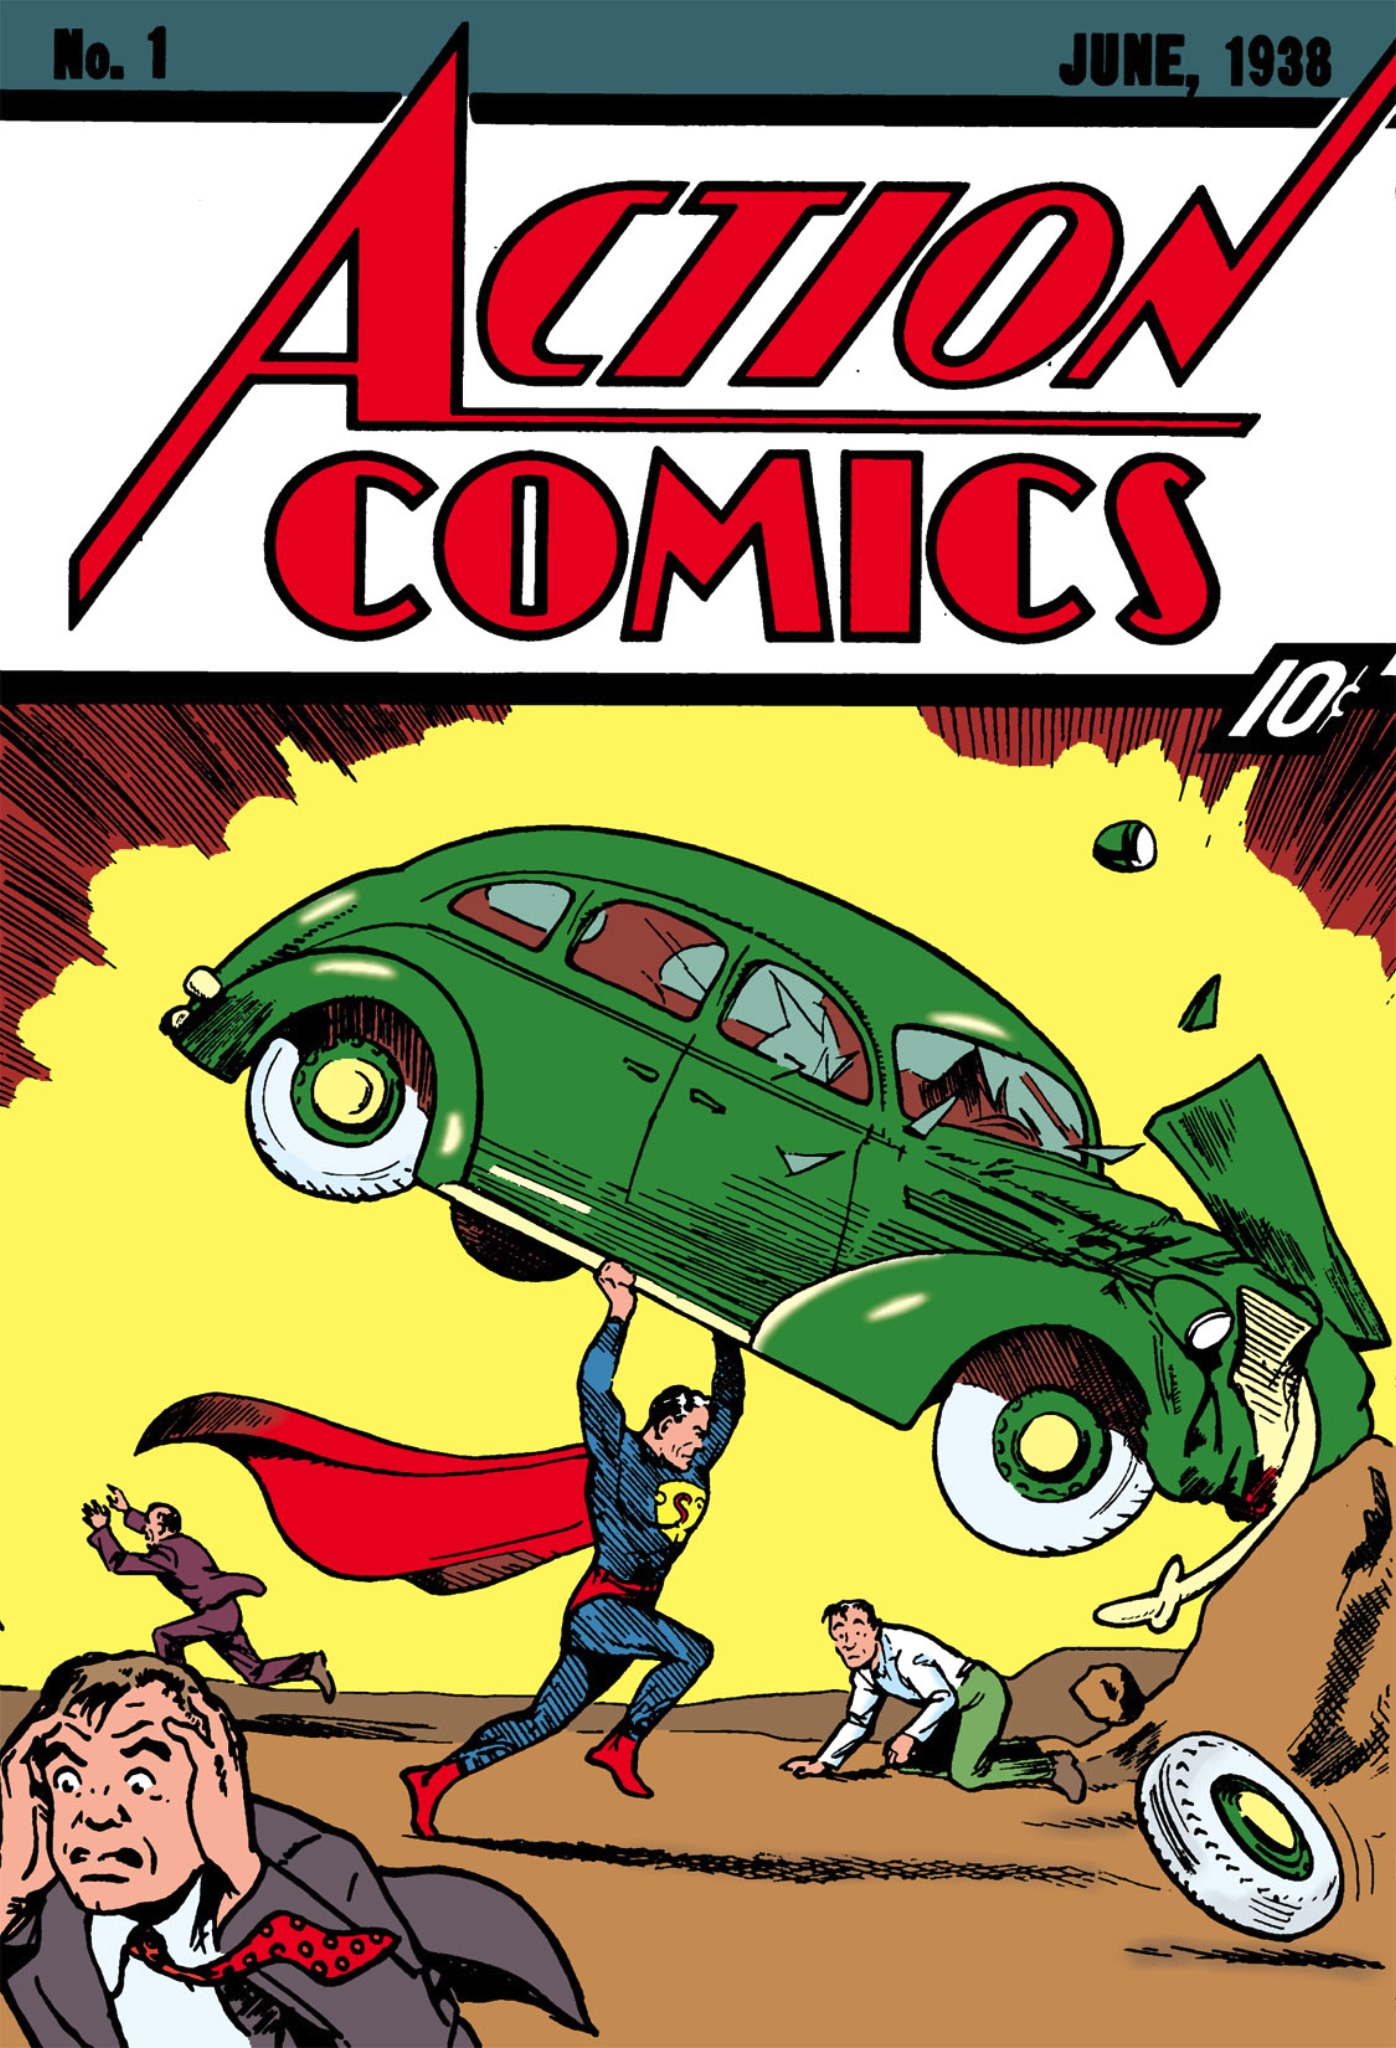 Action Comics Vol. 1 #1